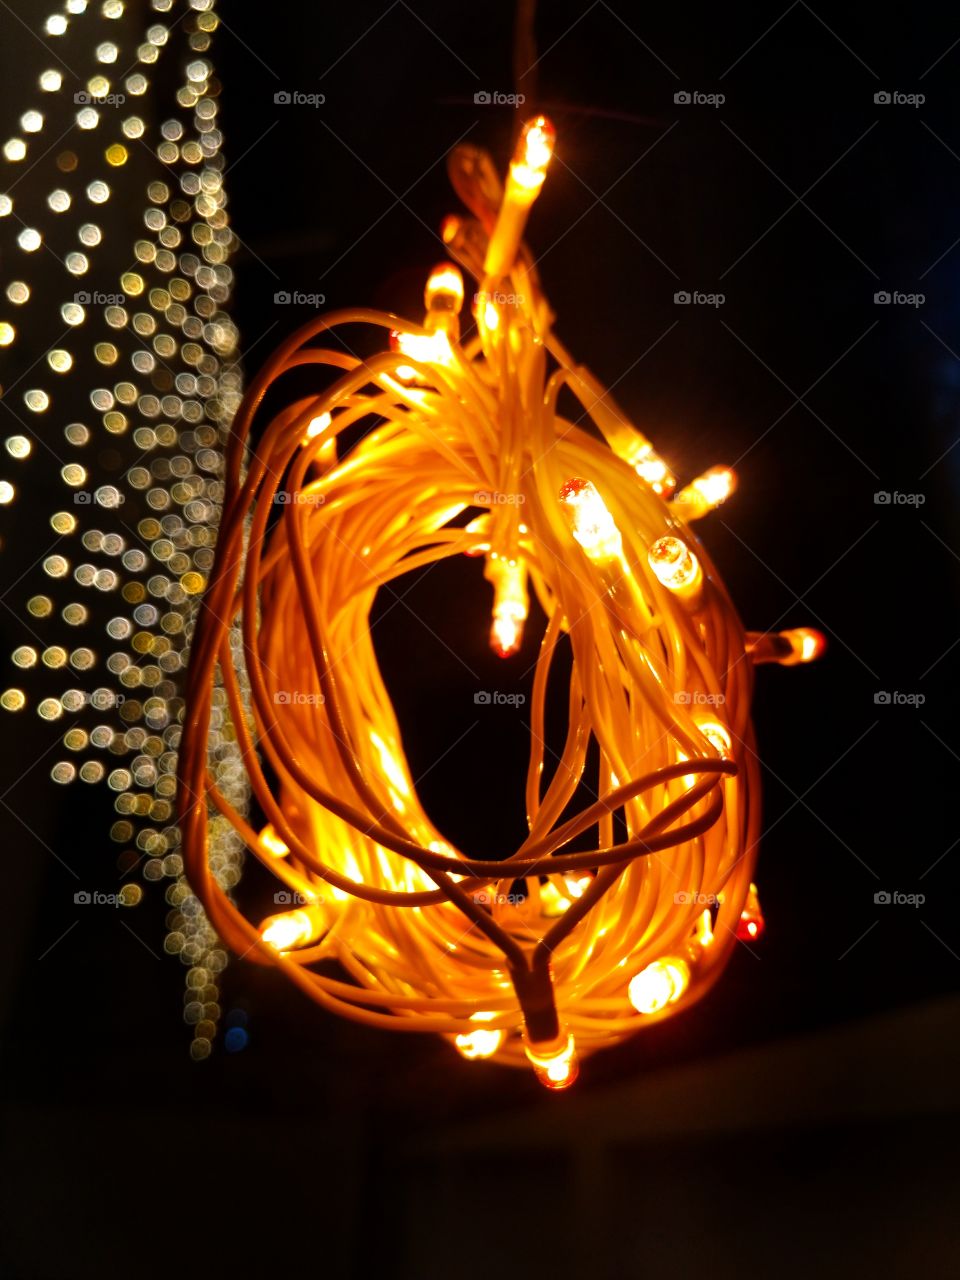 #festivetouch #tradition #lighting #diwali #enjoyable #love festivetouch